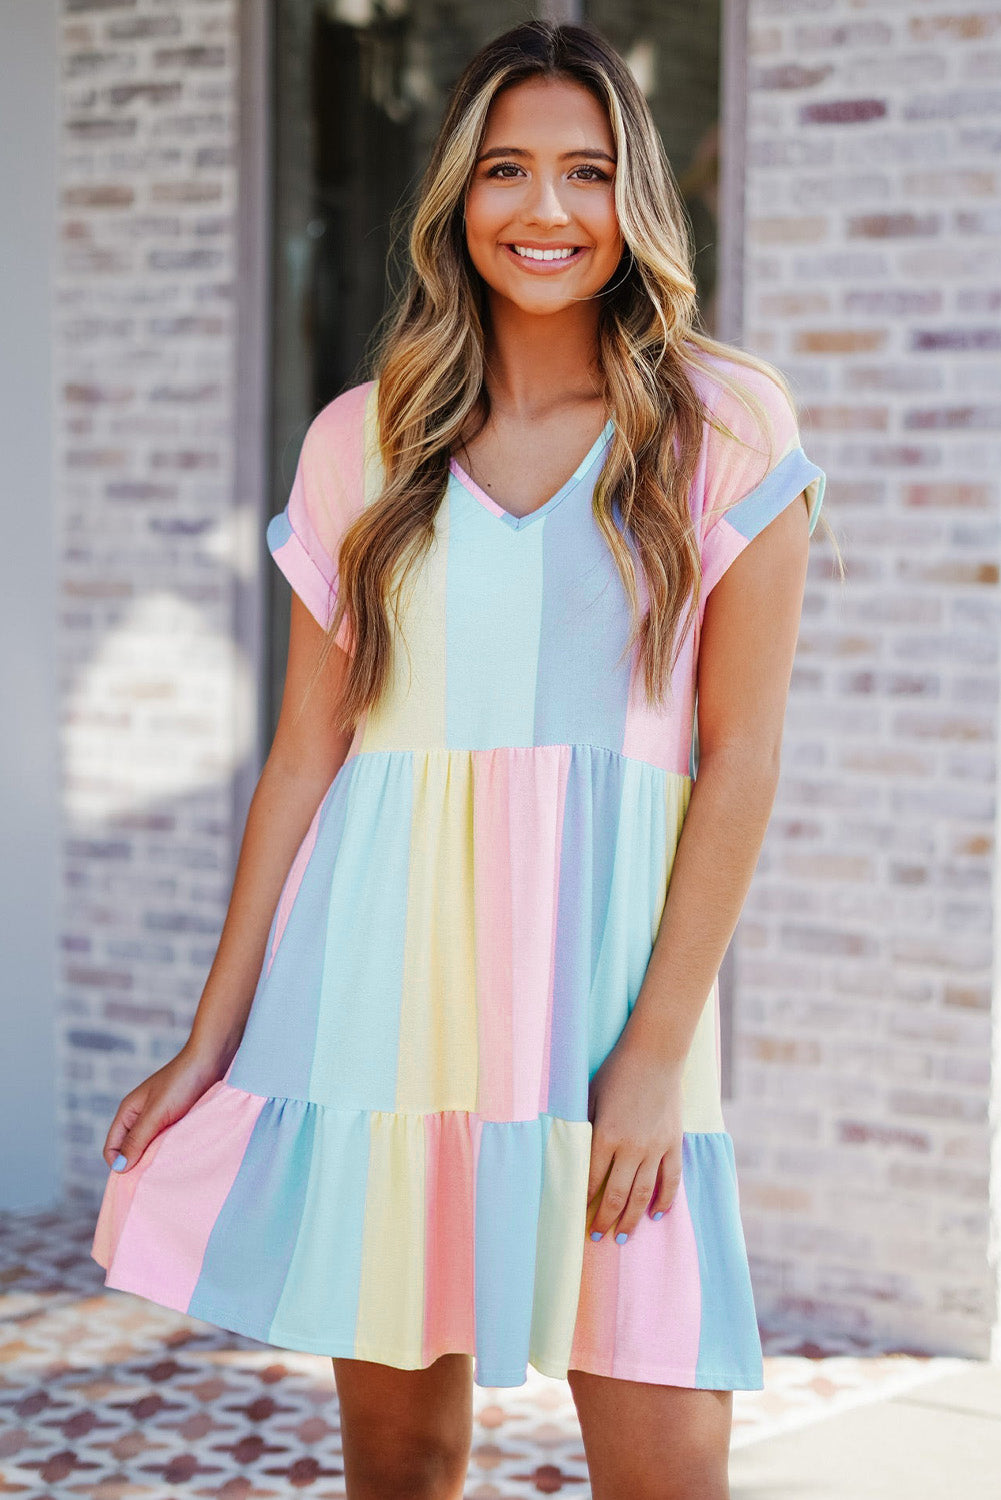 Višeslojna mini haljina s višestrukim prugama u boji